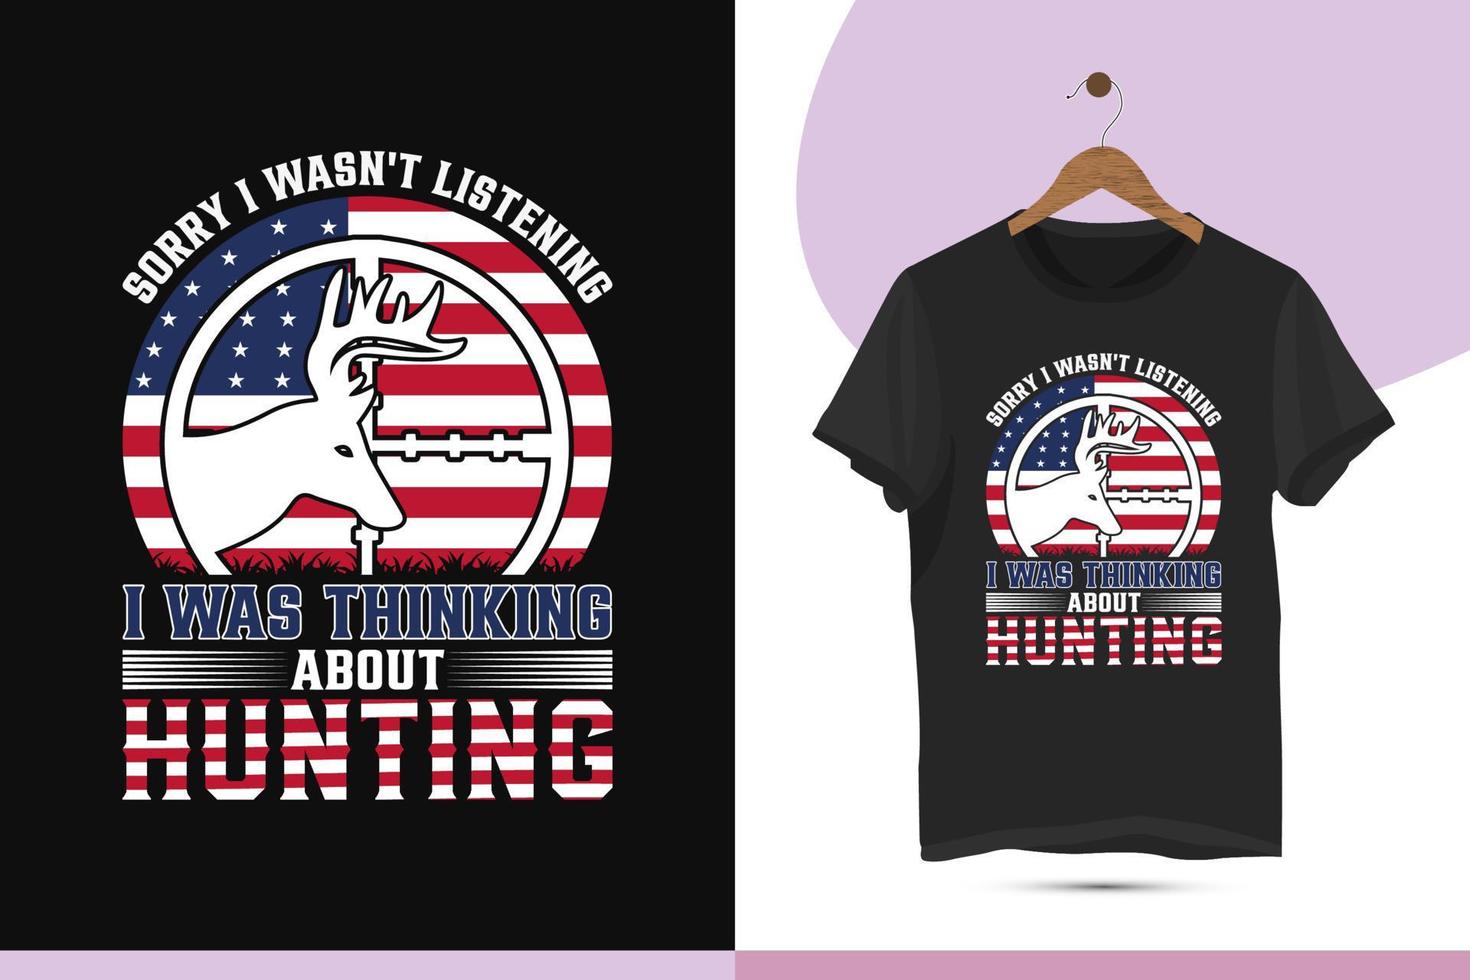 Tut mir leid, ich habe nicht zugehört, ich habe an die Jagd gedacht - Design-Vektorvorlage für T-Shirt-Designs mit US-Flaggenjagd. kreative Kunst für Hemden, Tassen, Taschen, Jagdliebhaber und andere Zwecke. vektor